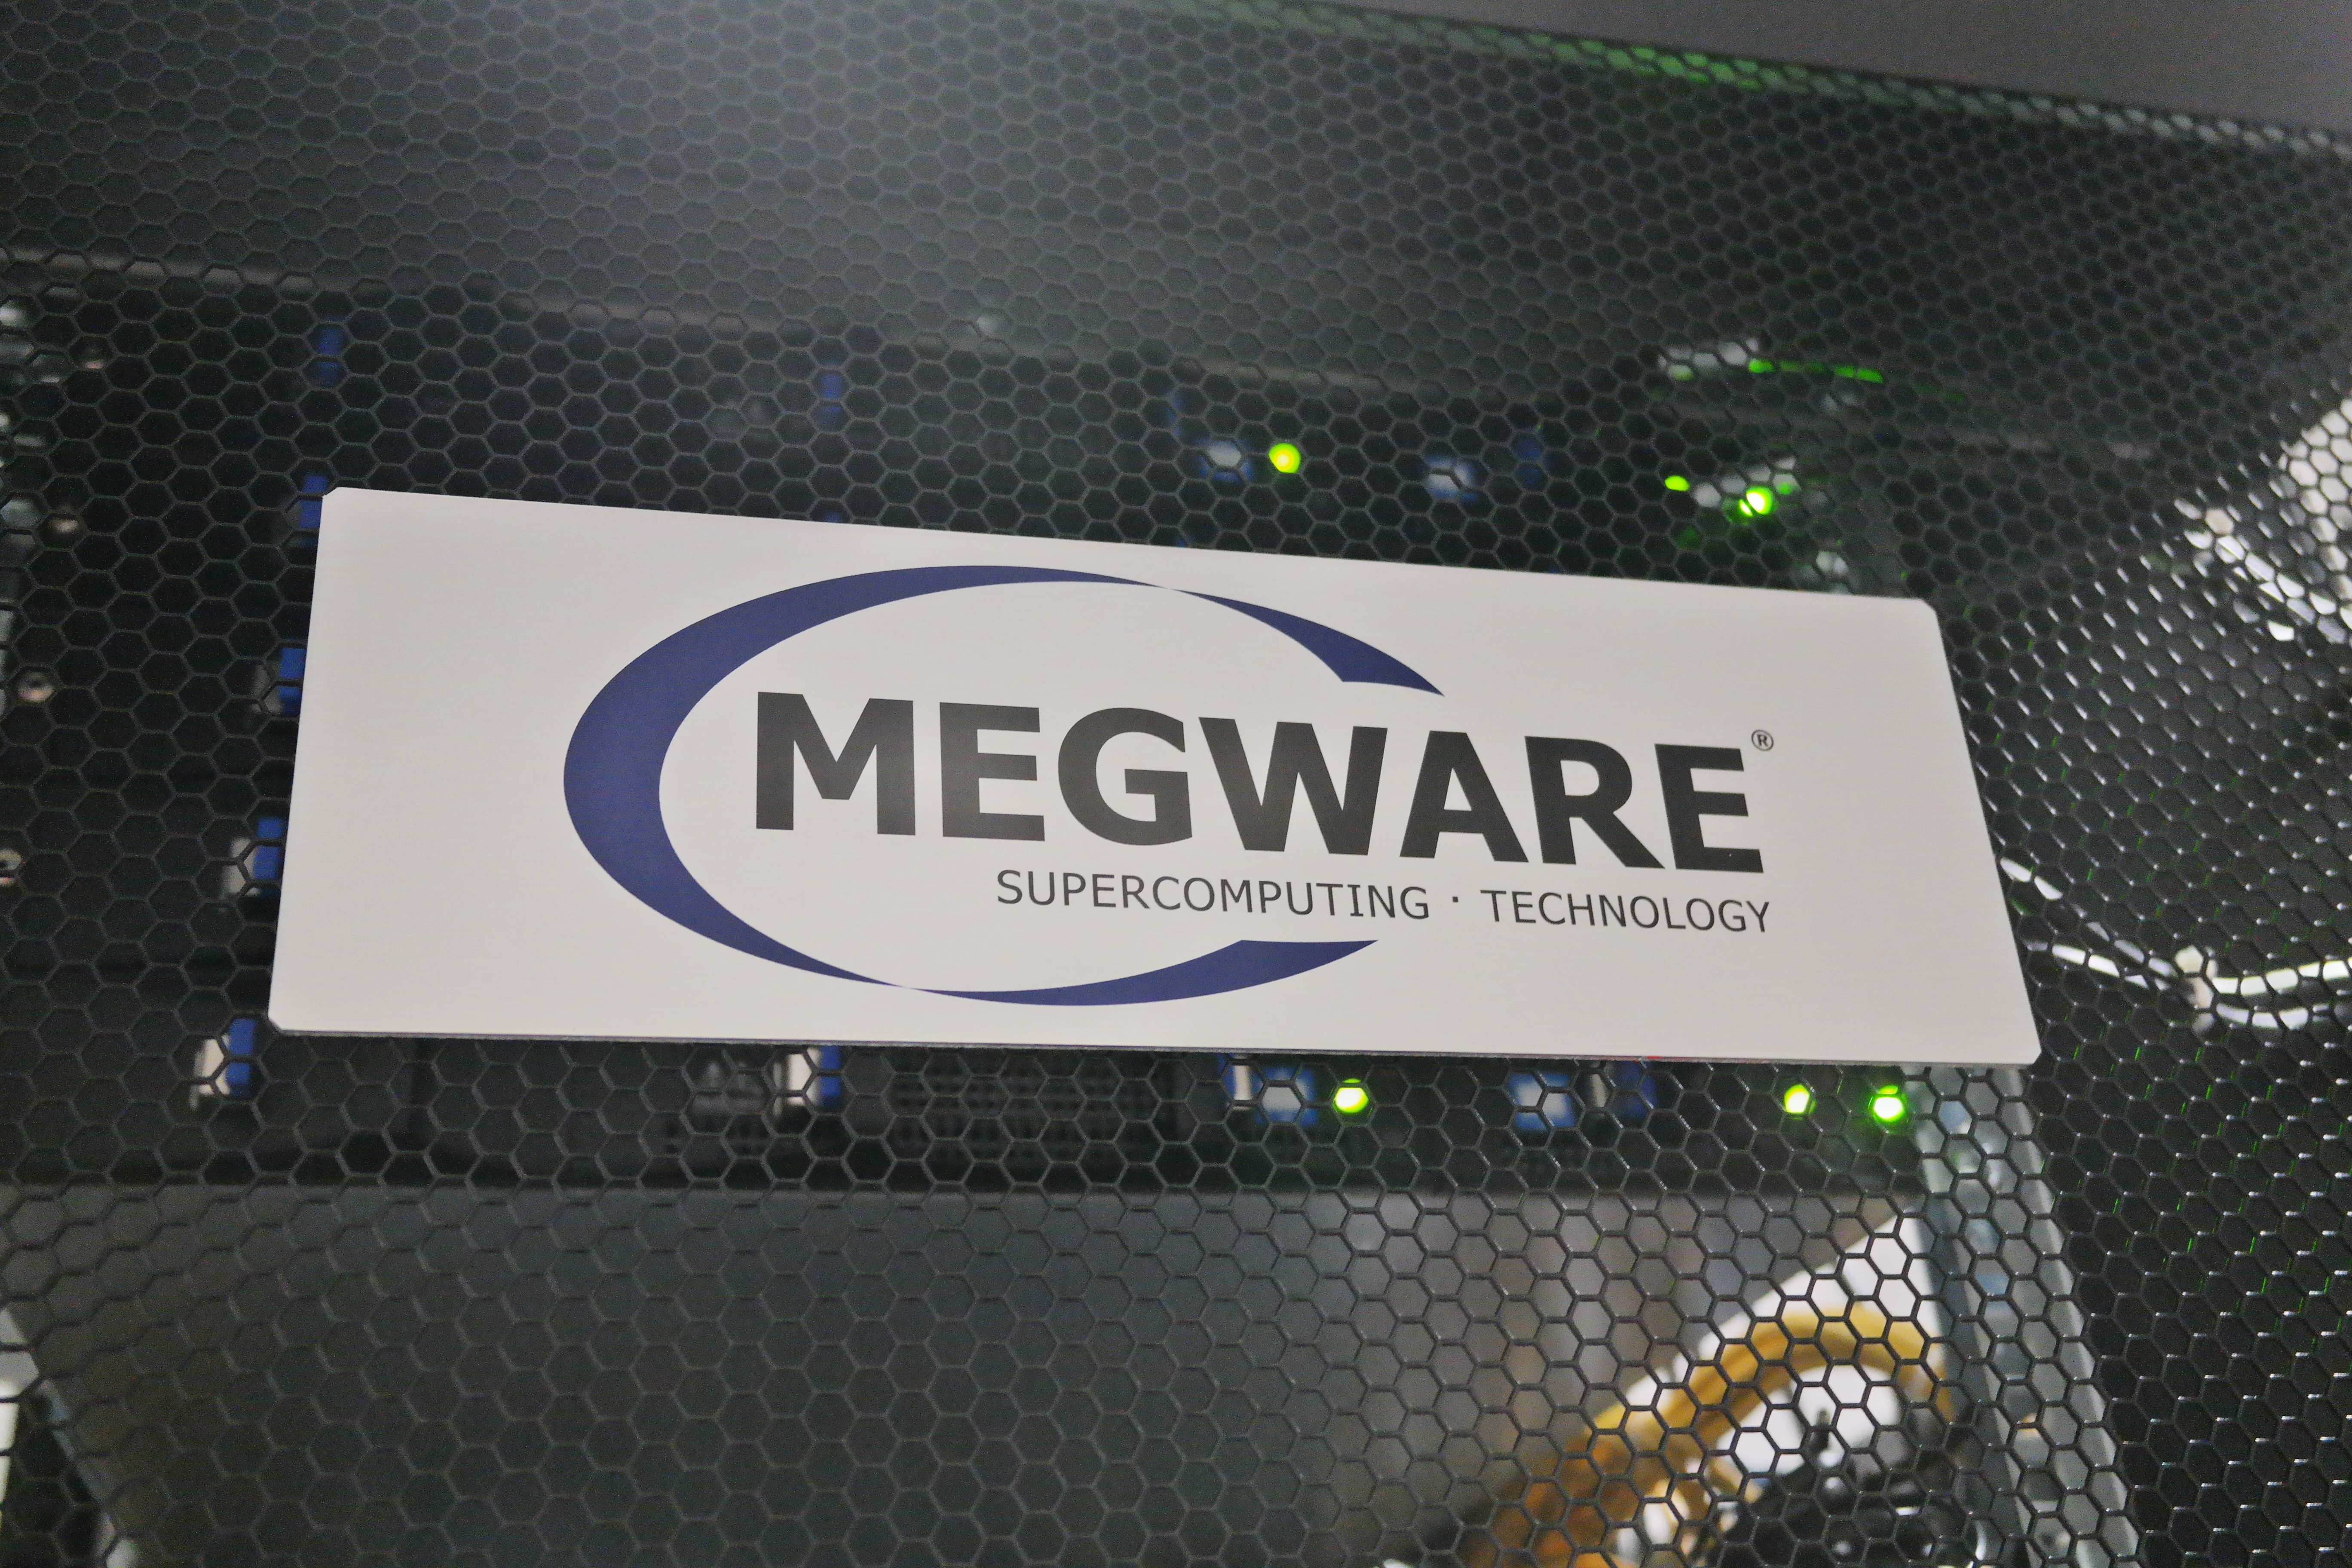 Herstellerschild von Megware am Computer